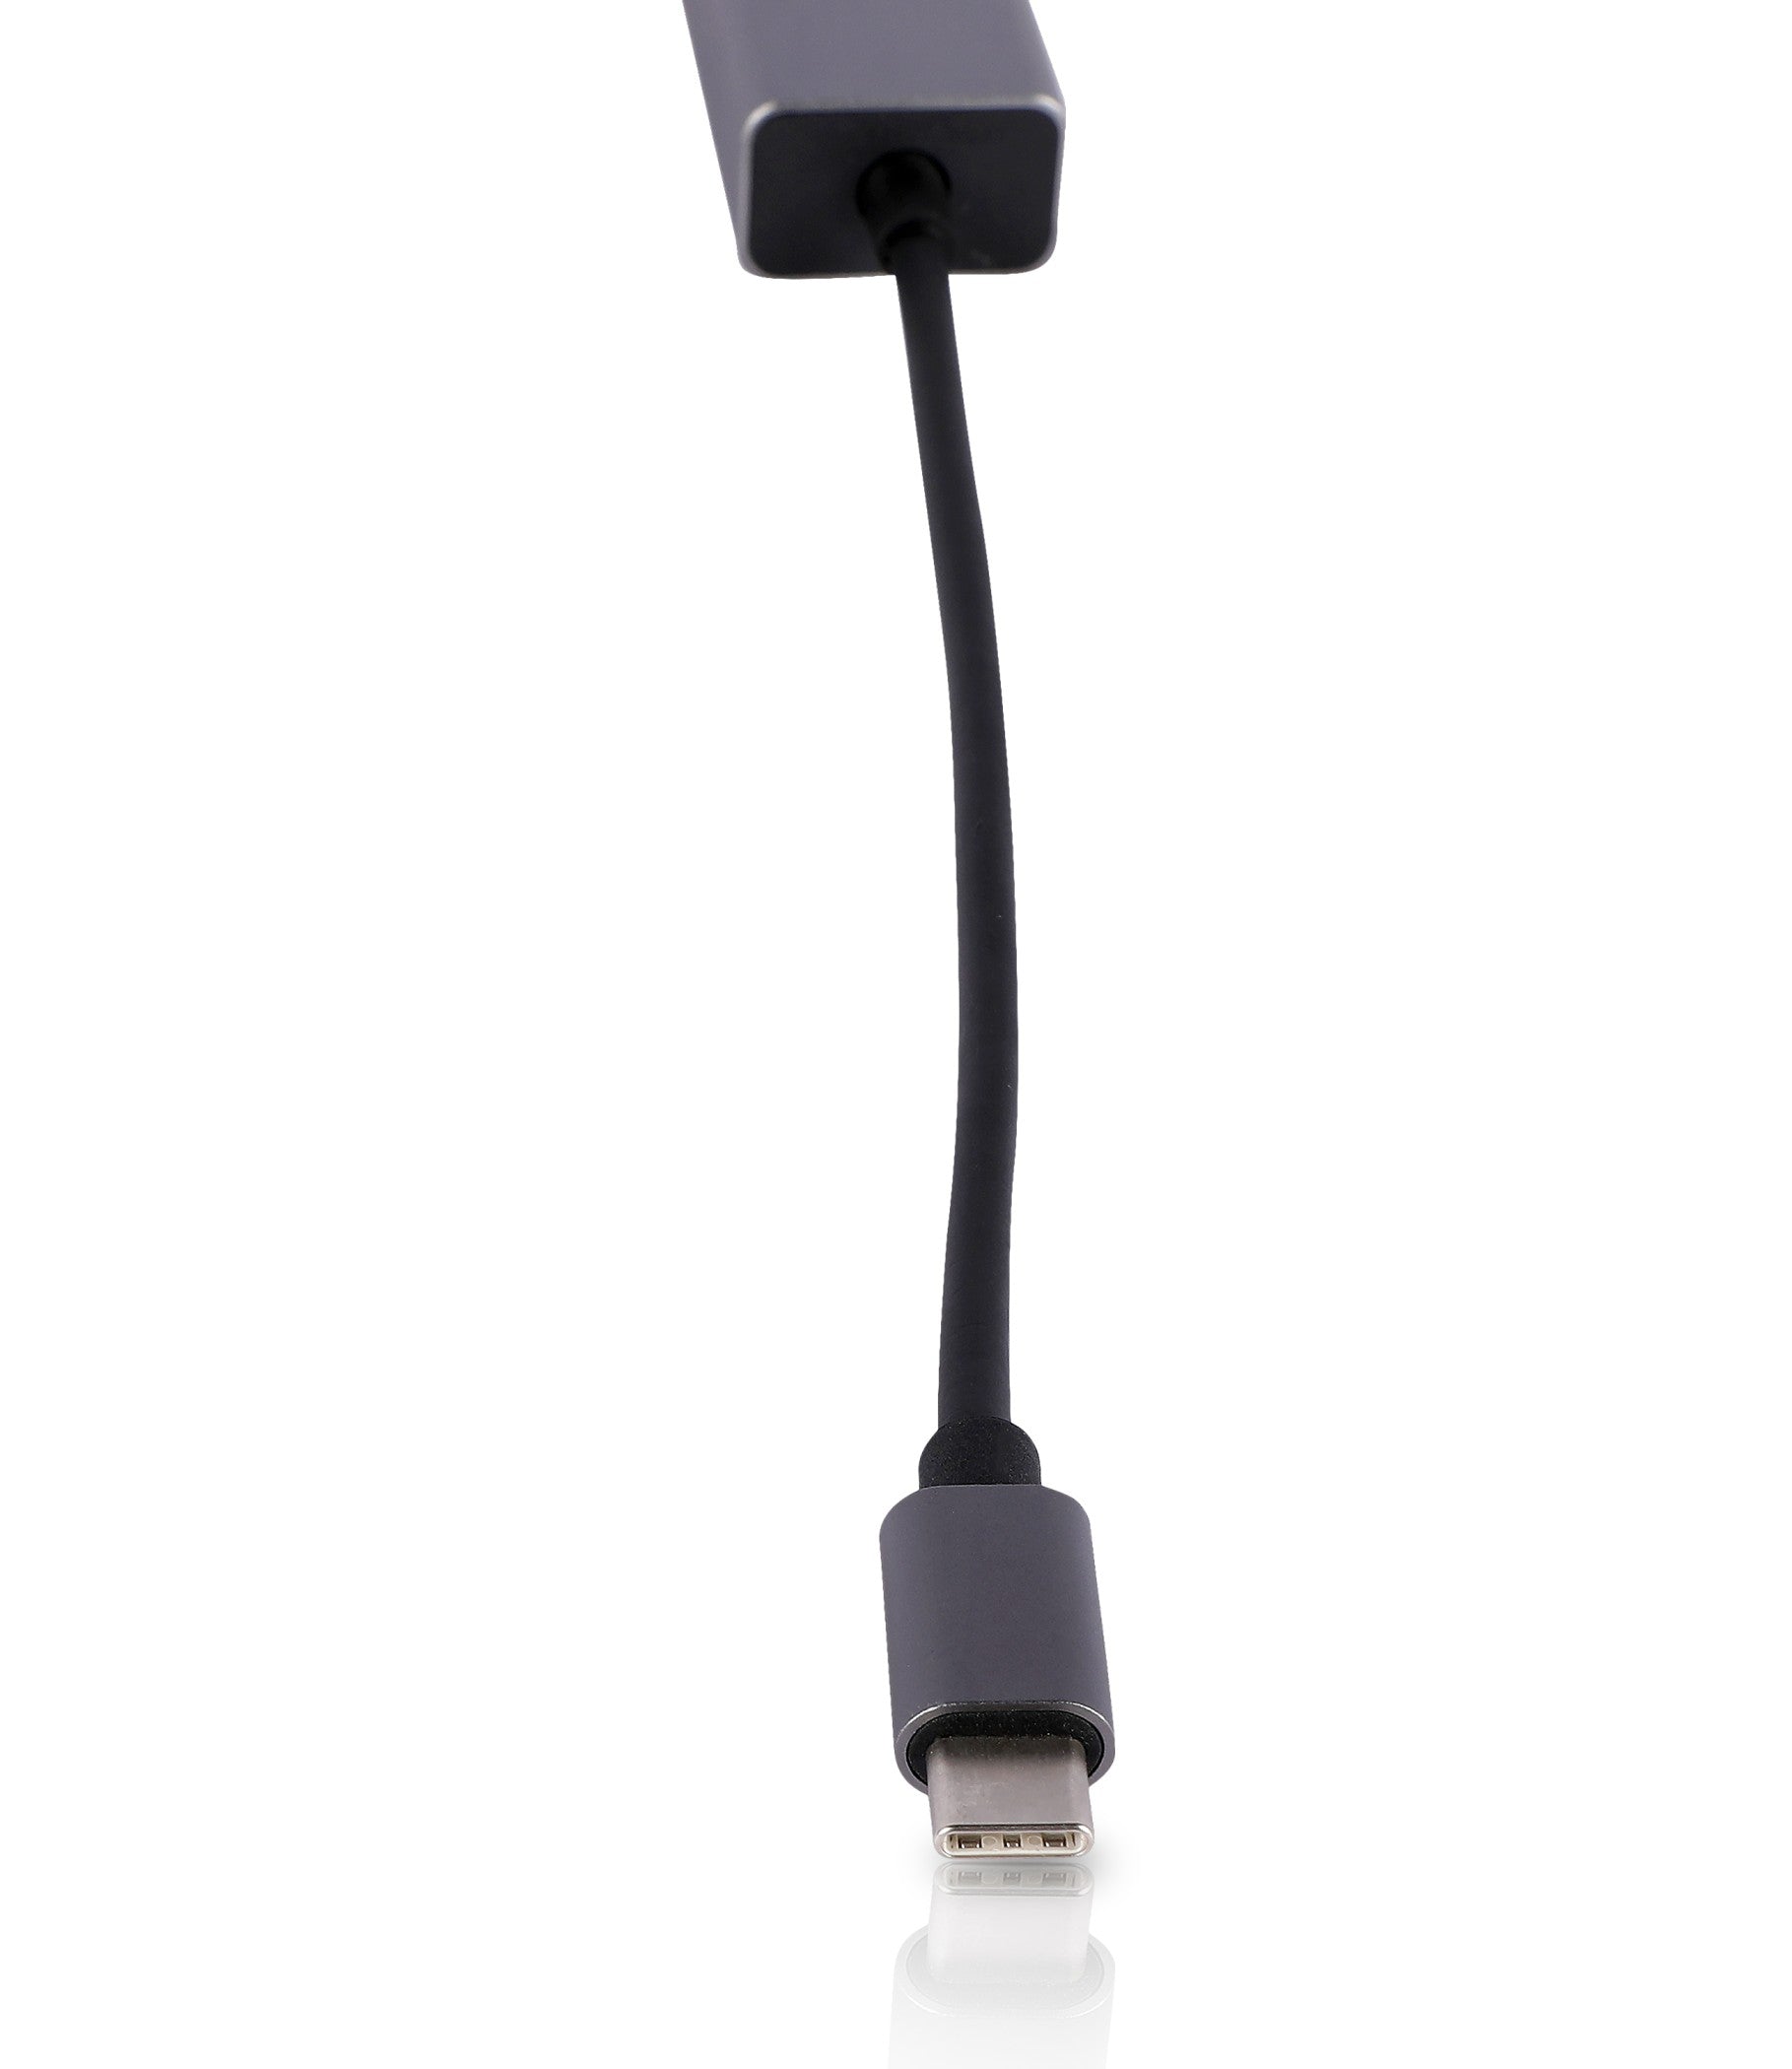 POWERX USB C TO LAN ADAPTER